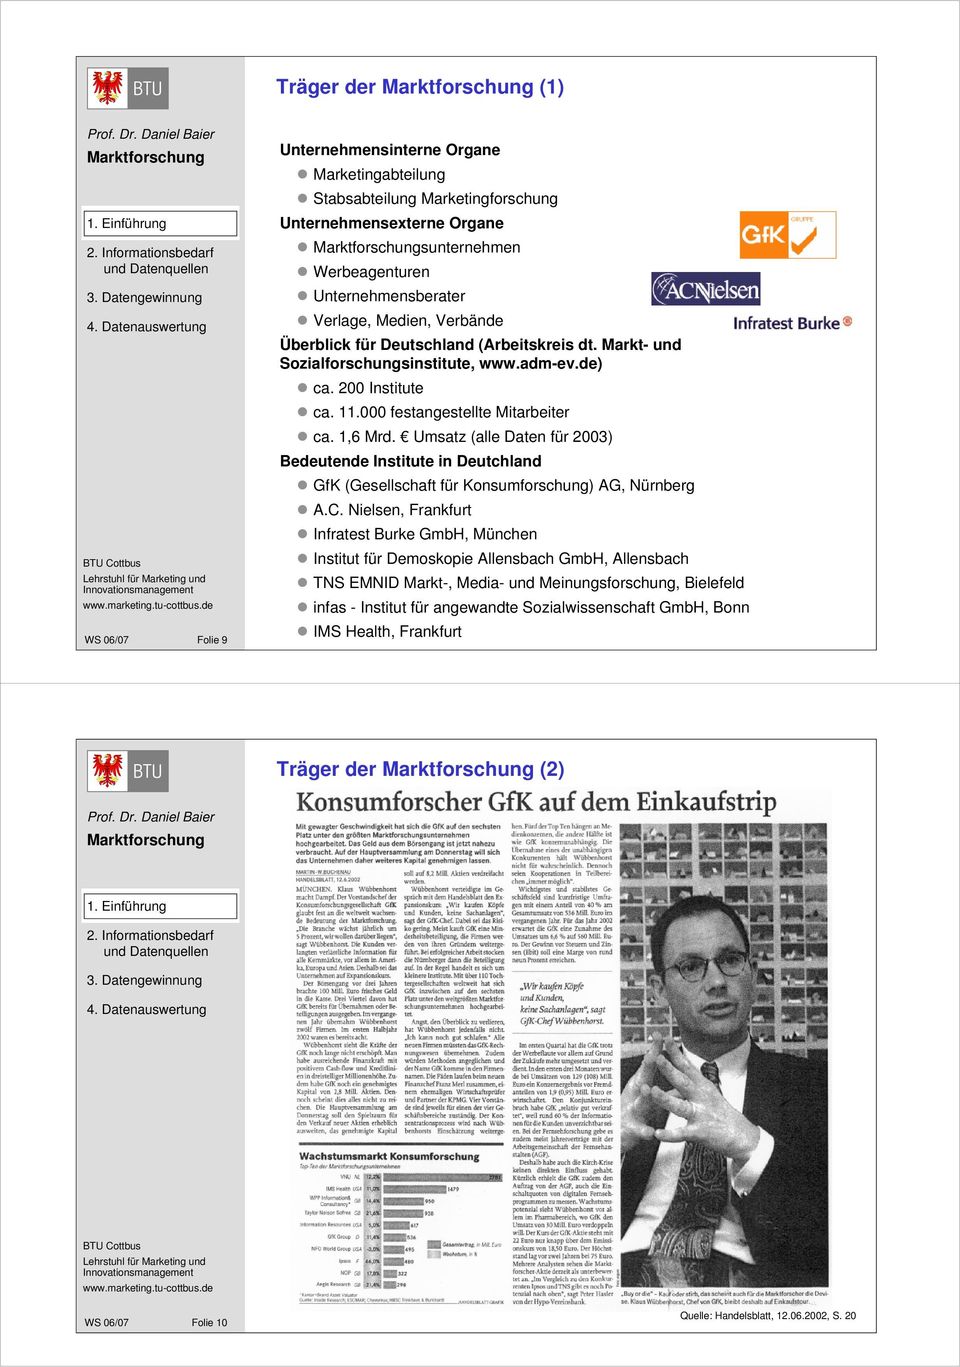 Umsatz (alle Daten für 2003) Bedeutende Institute in Deutchland GfK (Gesellschaft für Konsumforschung) AG, Nürnberg A.C.